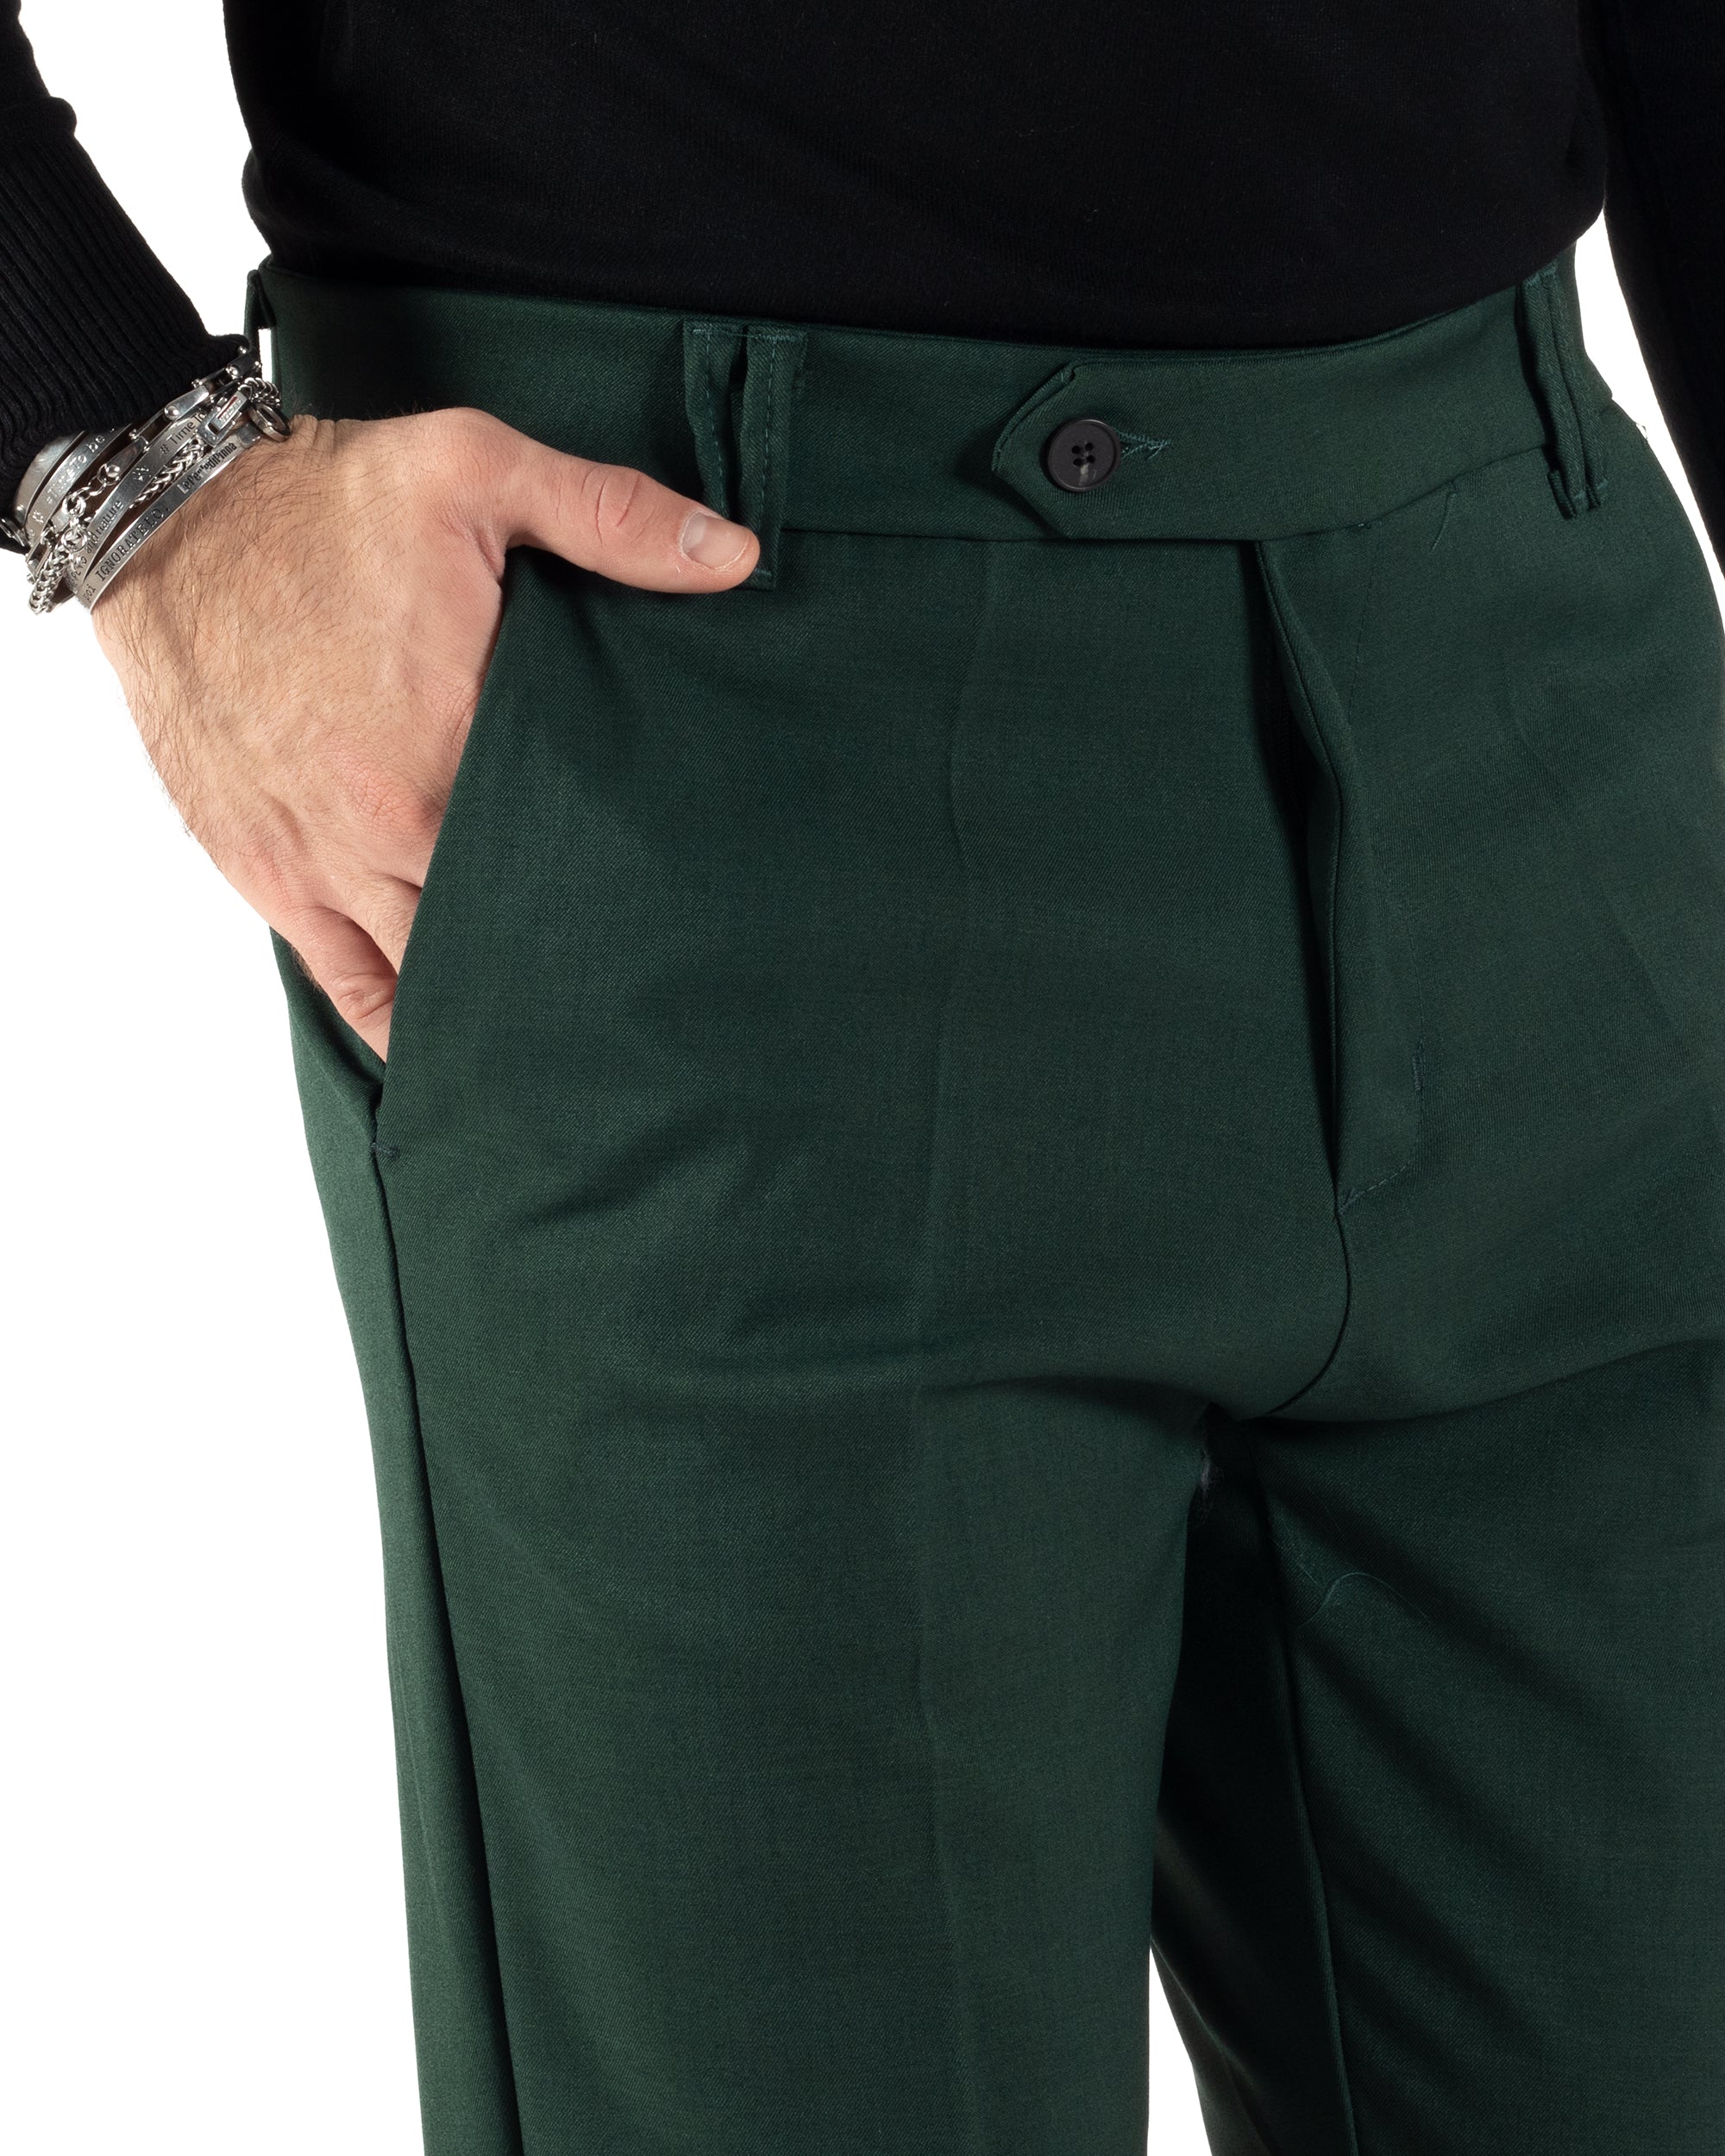 Pantaloni Uomo Viscosa Tasca America Classico Abbottonatura Allungata Casual Verde GIOSAL-P6010A